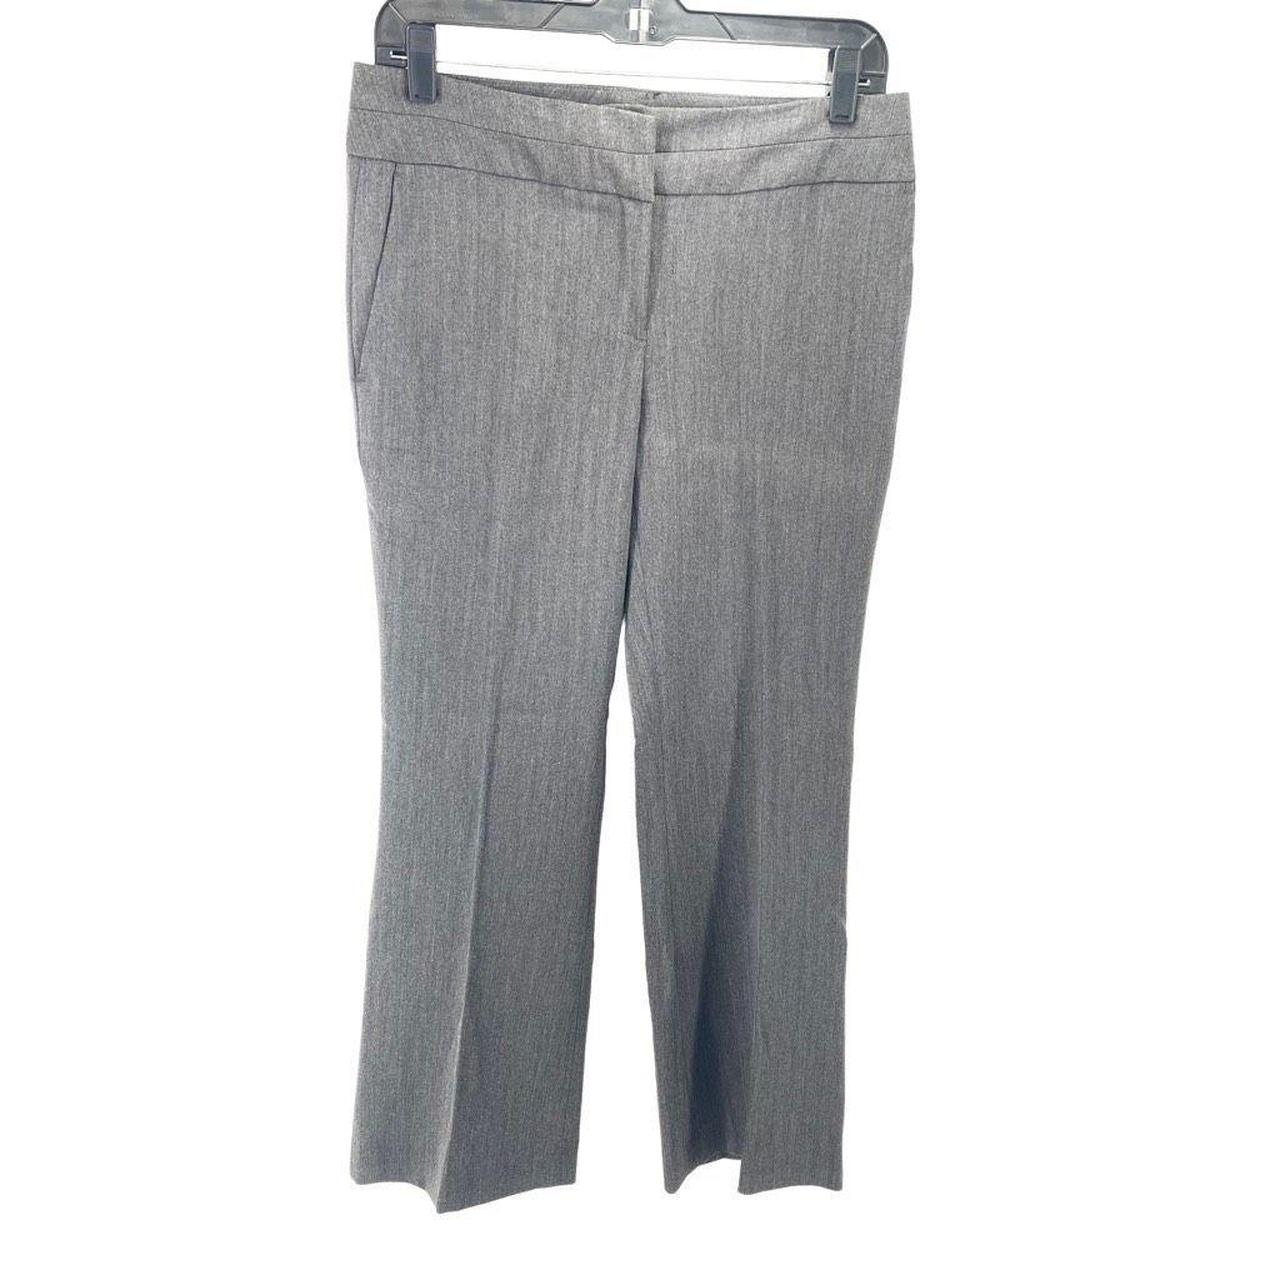 Chelsea Peers Women's Grey Trousers (4)